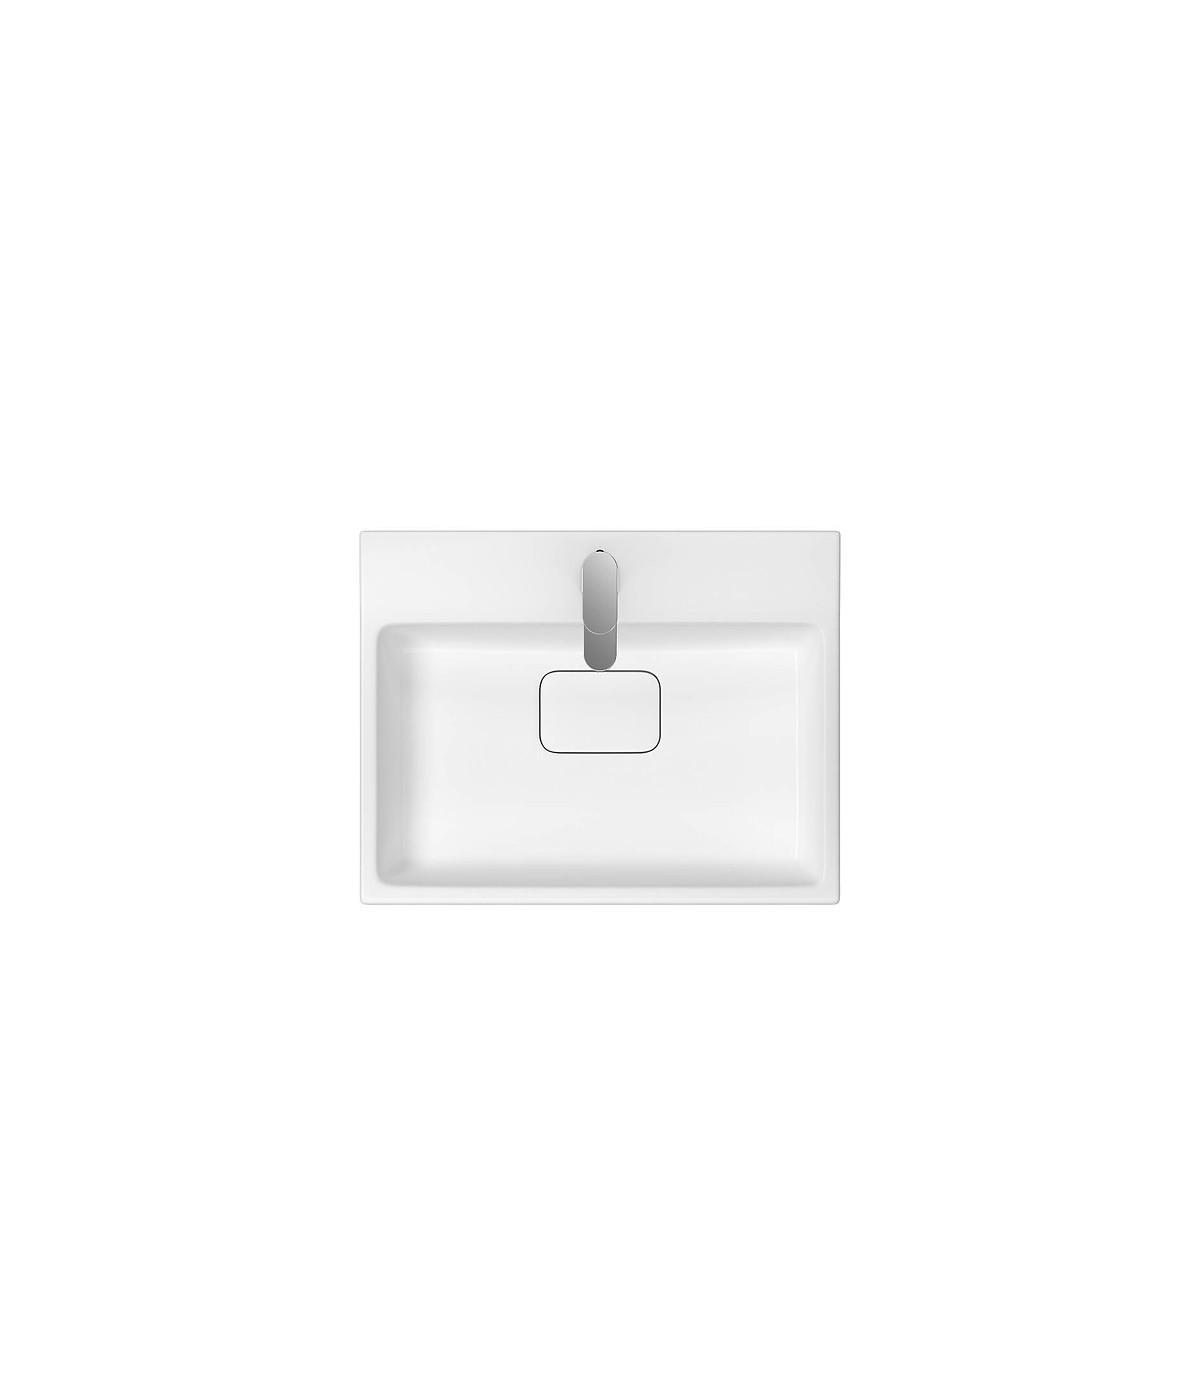 Badmöbel Set VIRGO 60 Waschbecken-Unterschrank mit Waschbecken, 2-Schubladen, Grau Eiche, Schwarz Möbelgriffe